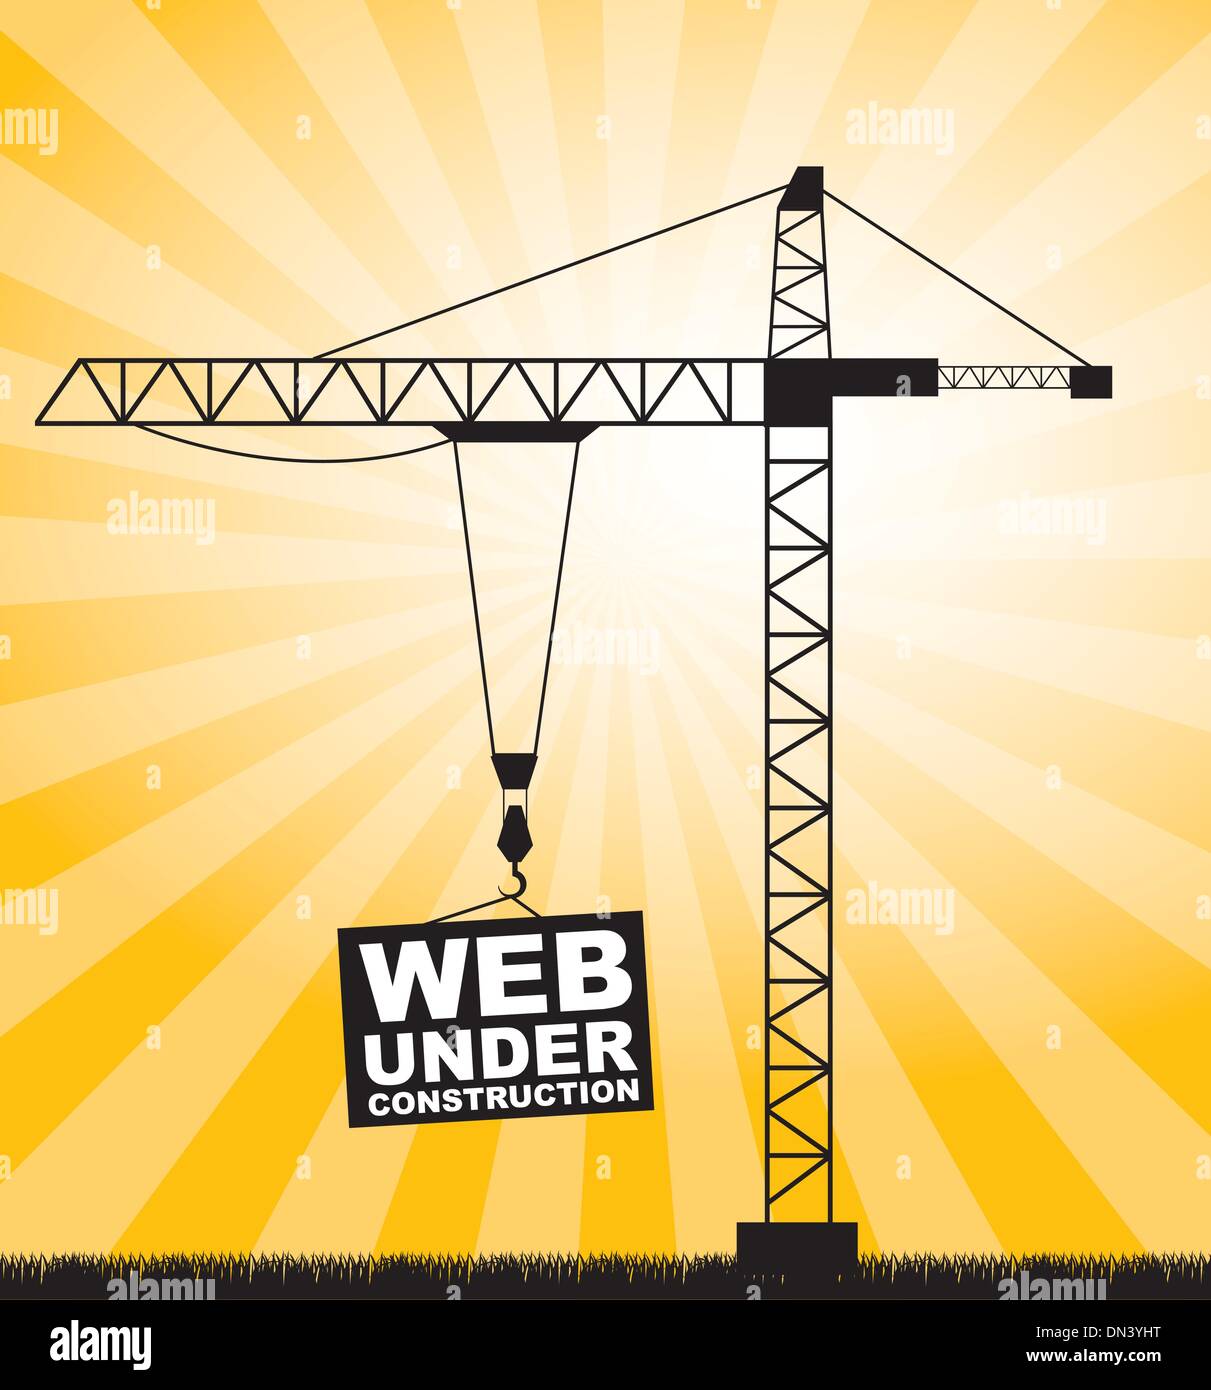 construction crane Stock Vector